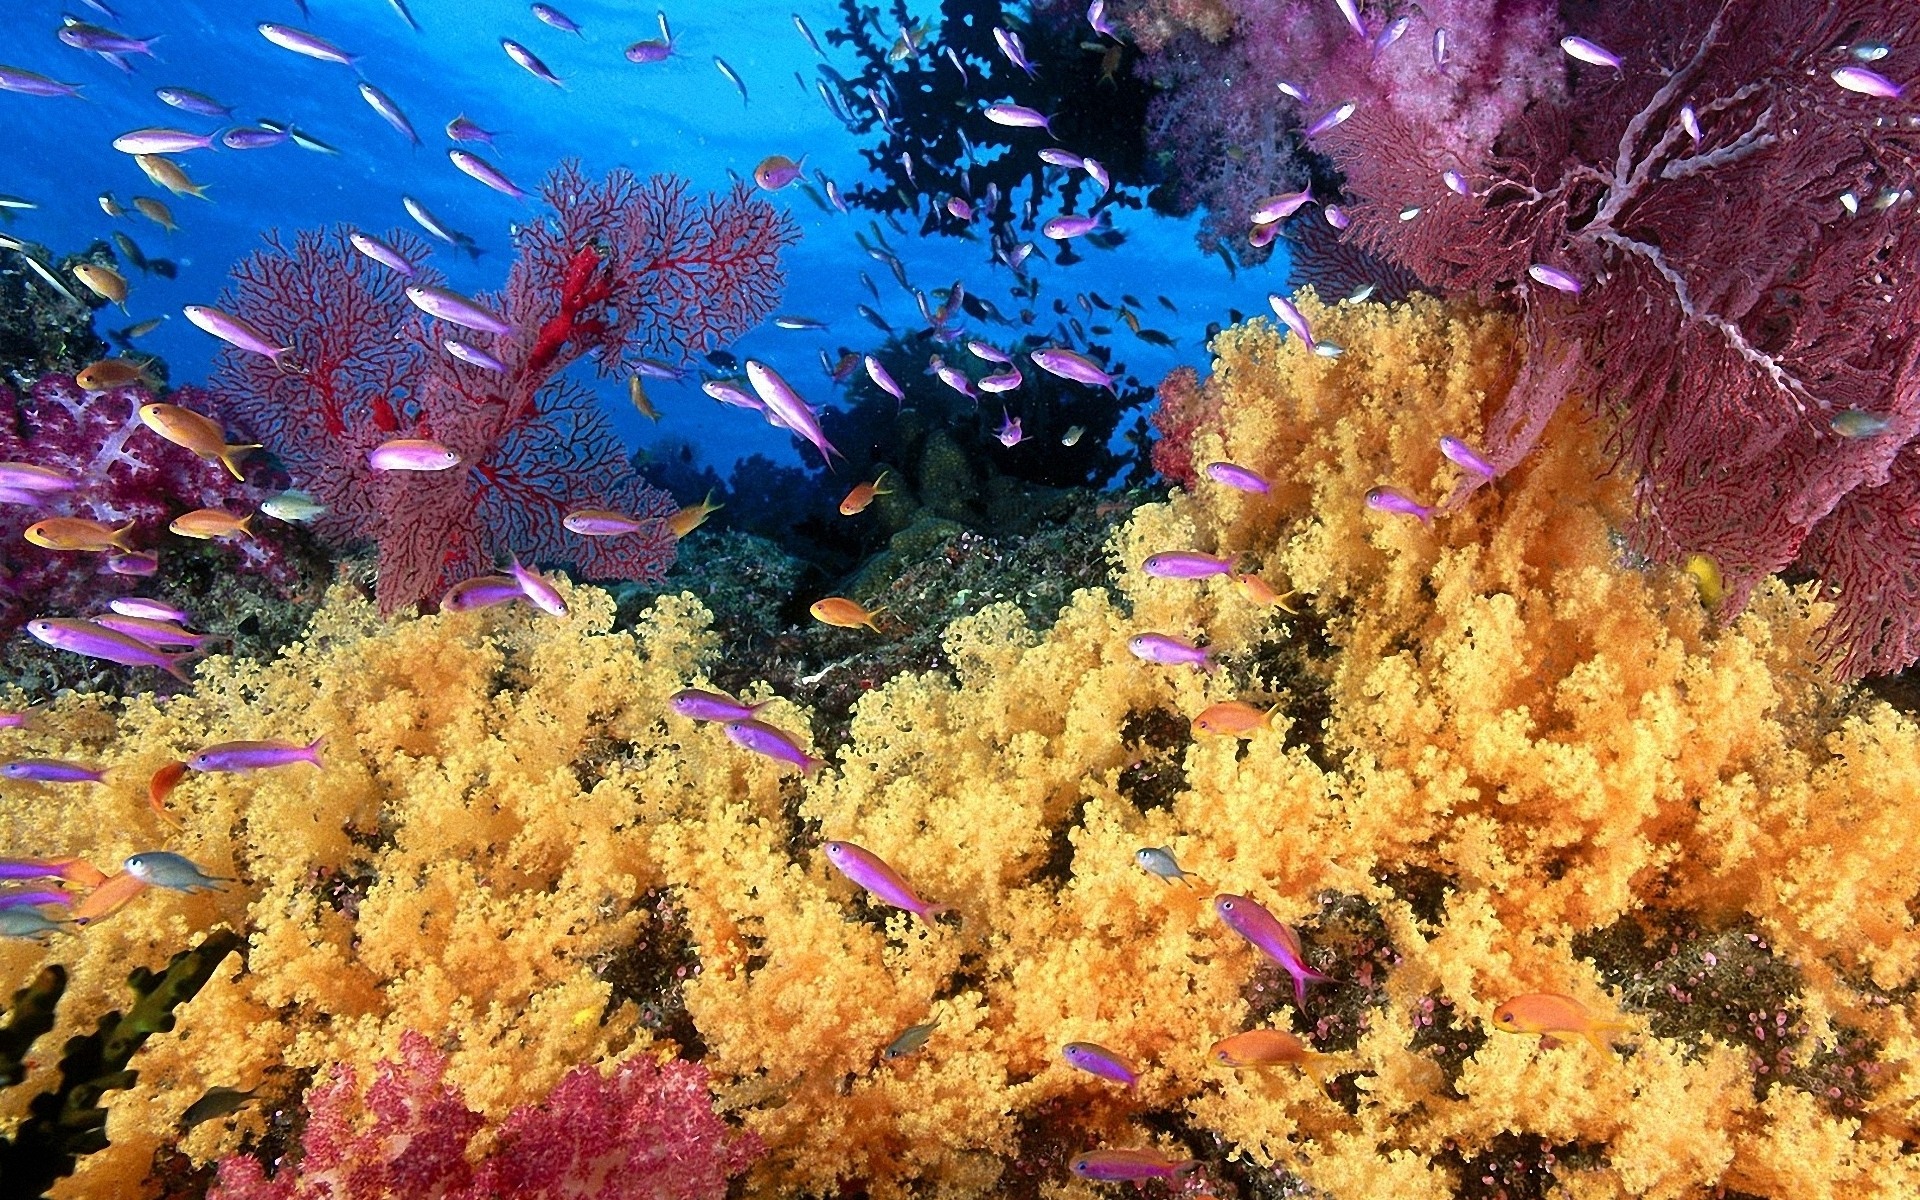 Underwater World Desktop Background